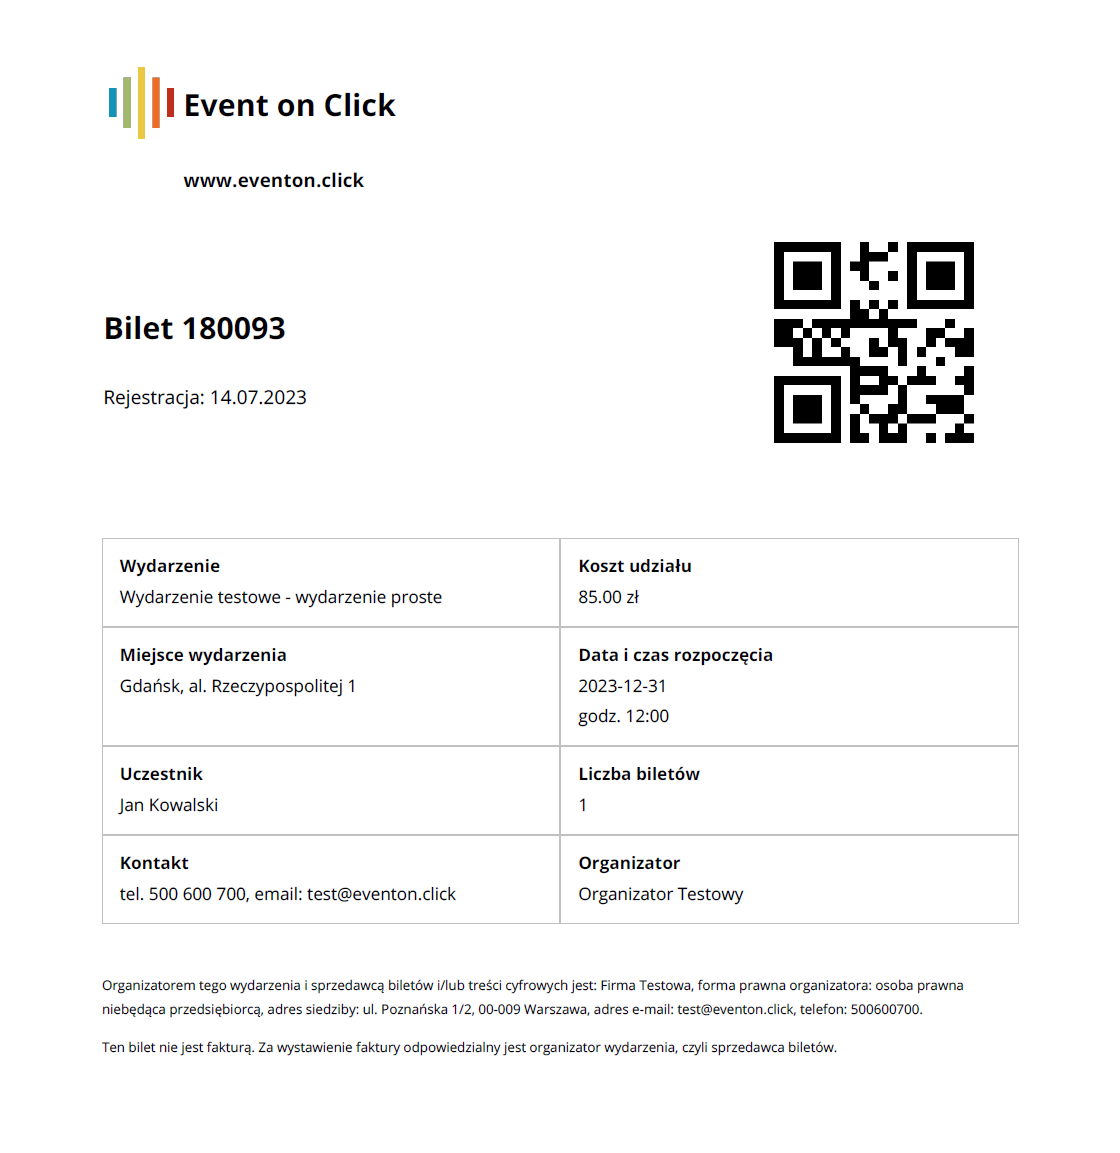 Sample ticket PDF